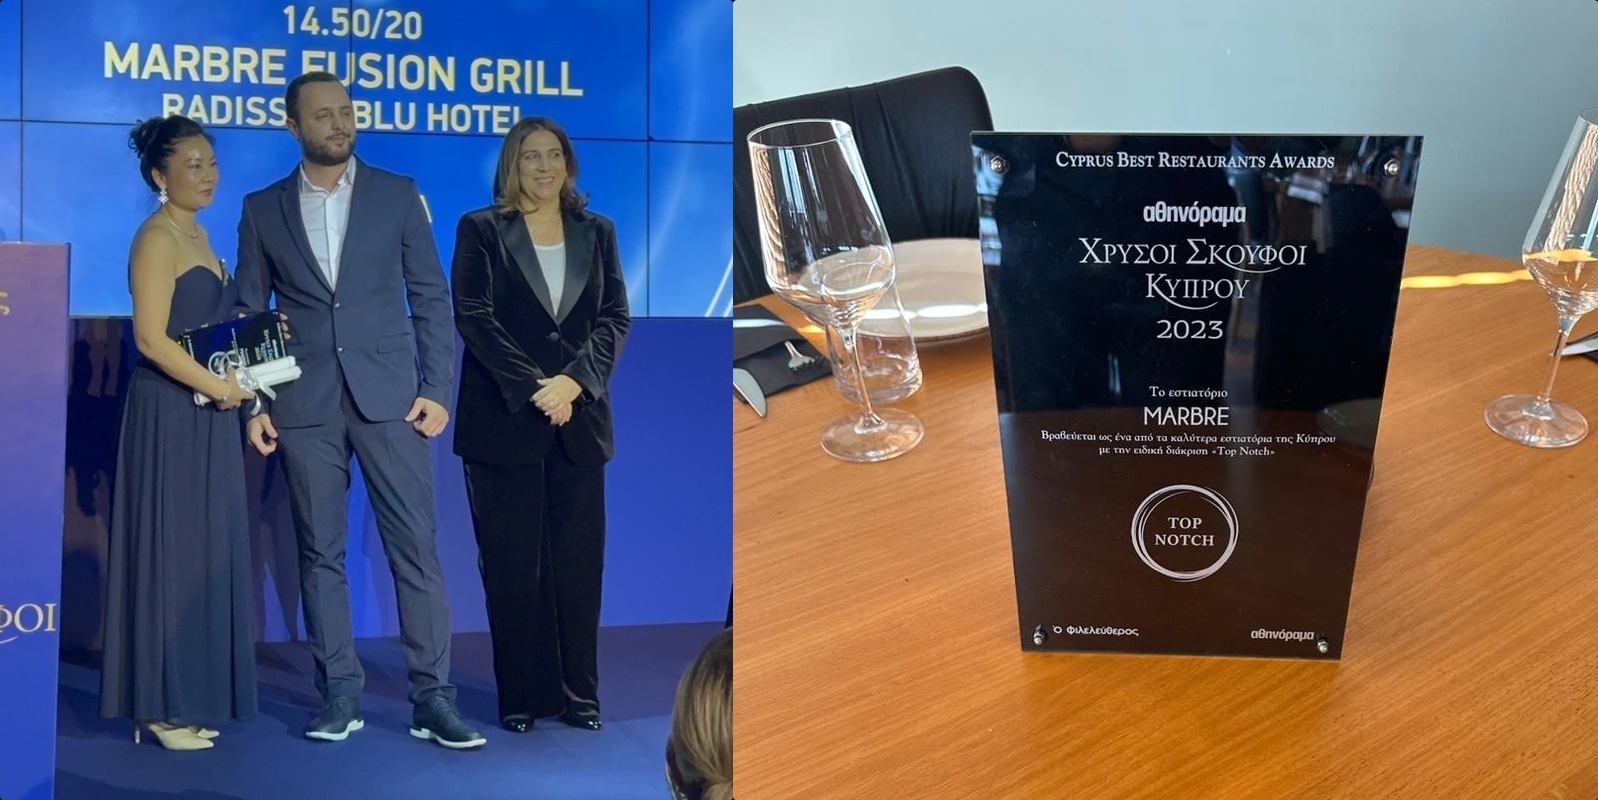 Το Marbre Fusion Grill κέρδισε το Βραβείο TOP NOTCH στα Βραβεία Γαστρονομίας «Αθηνόραμα Χρυσοί Σκούφοι Κύπρου»